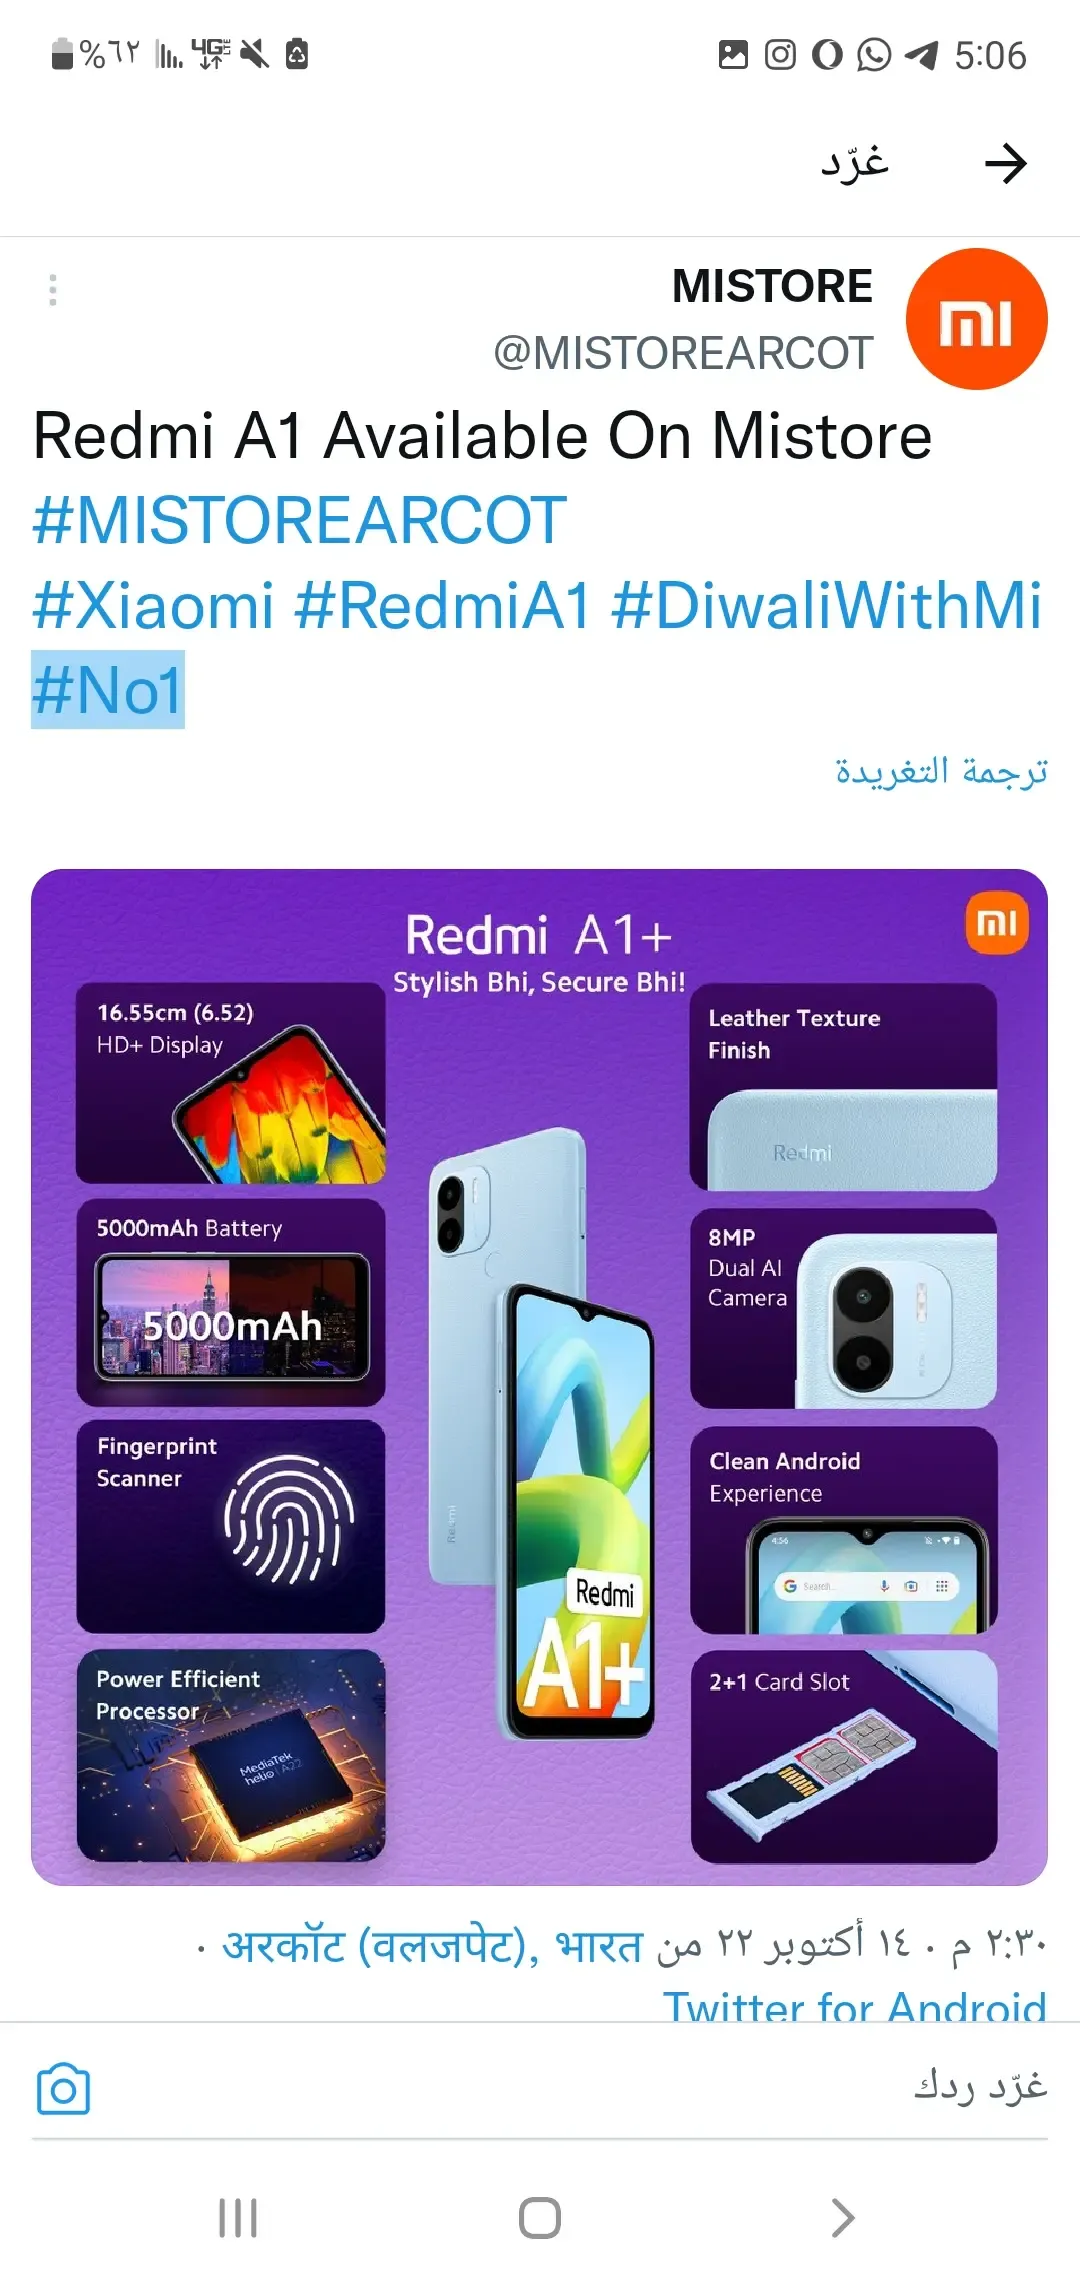 Xiaomi-redmiA1-technology360